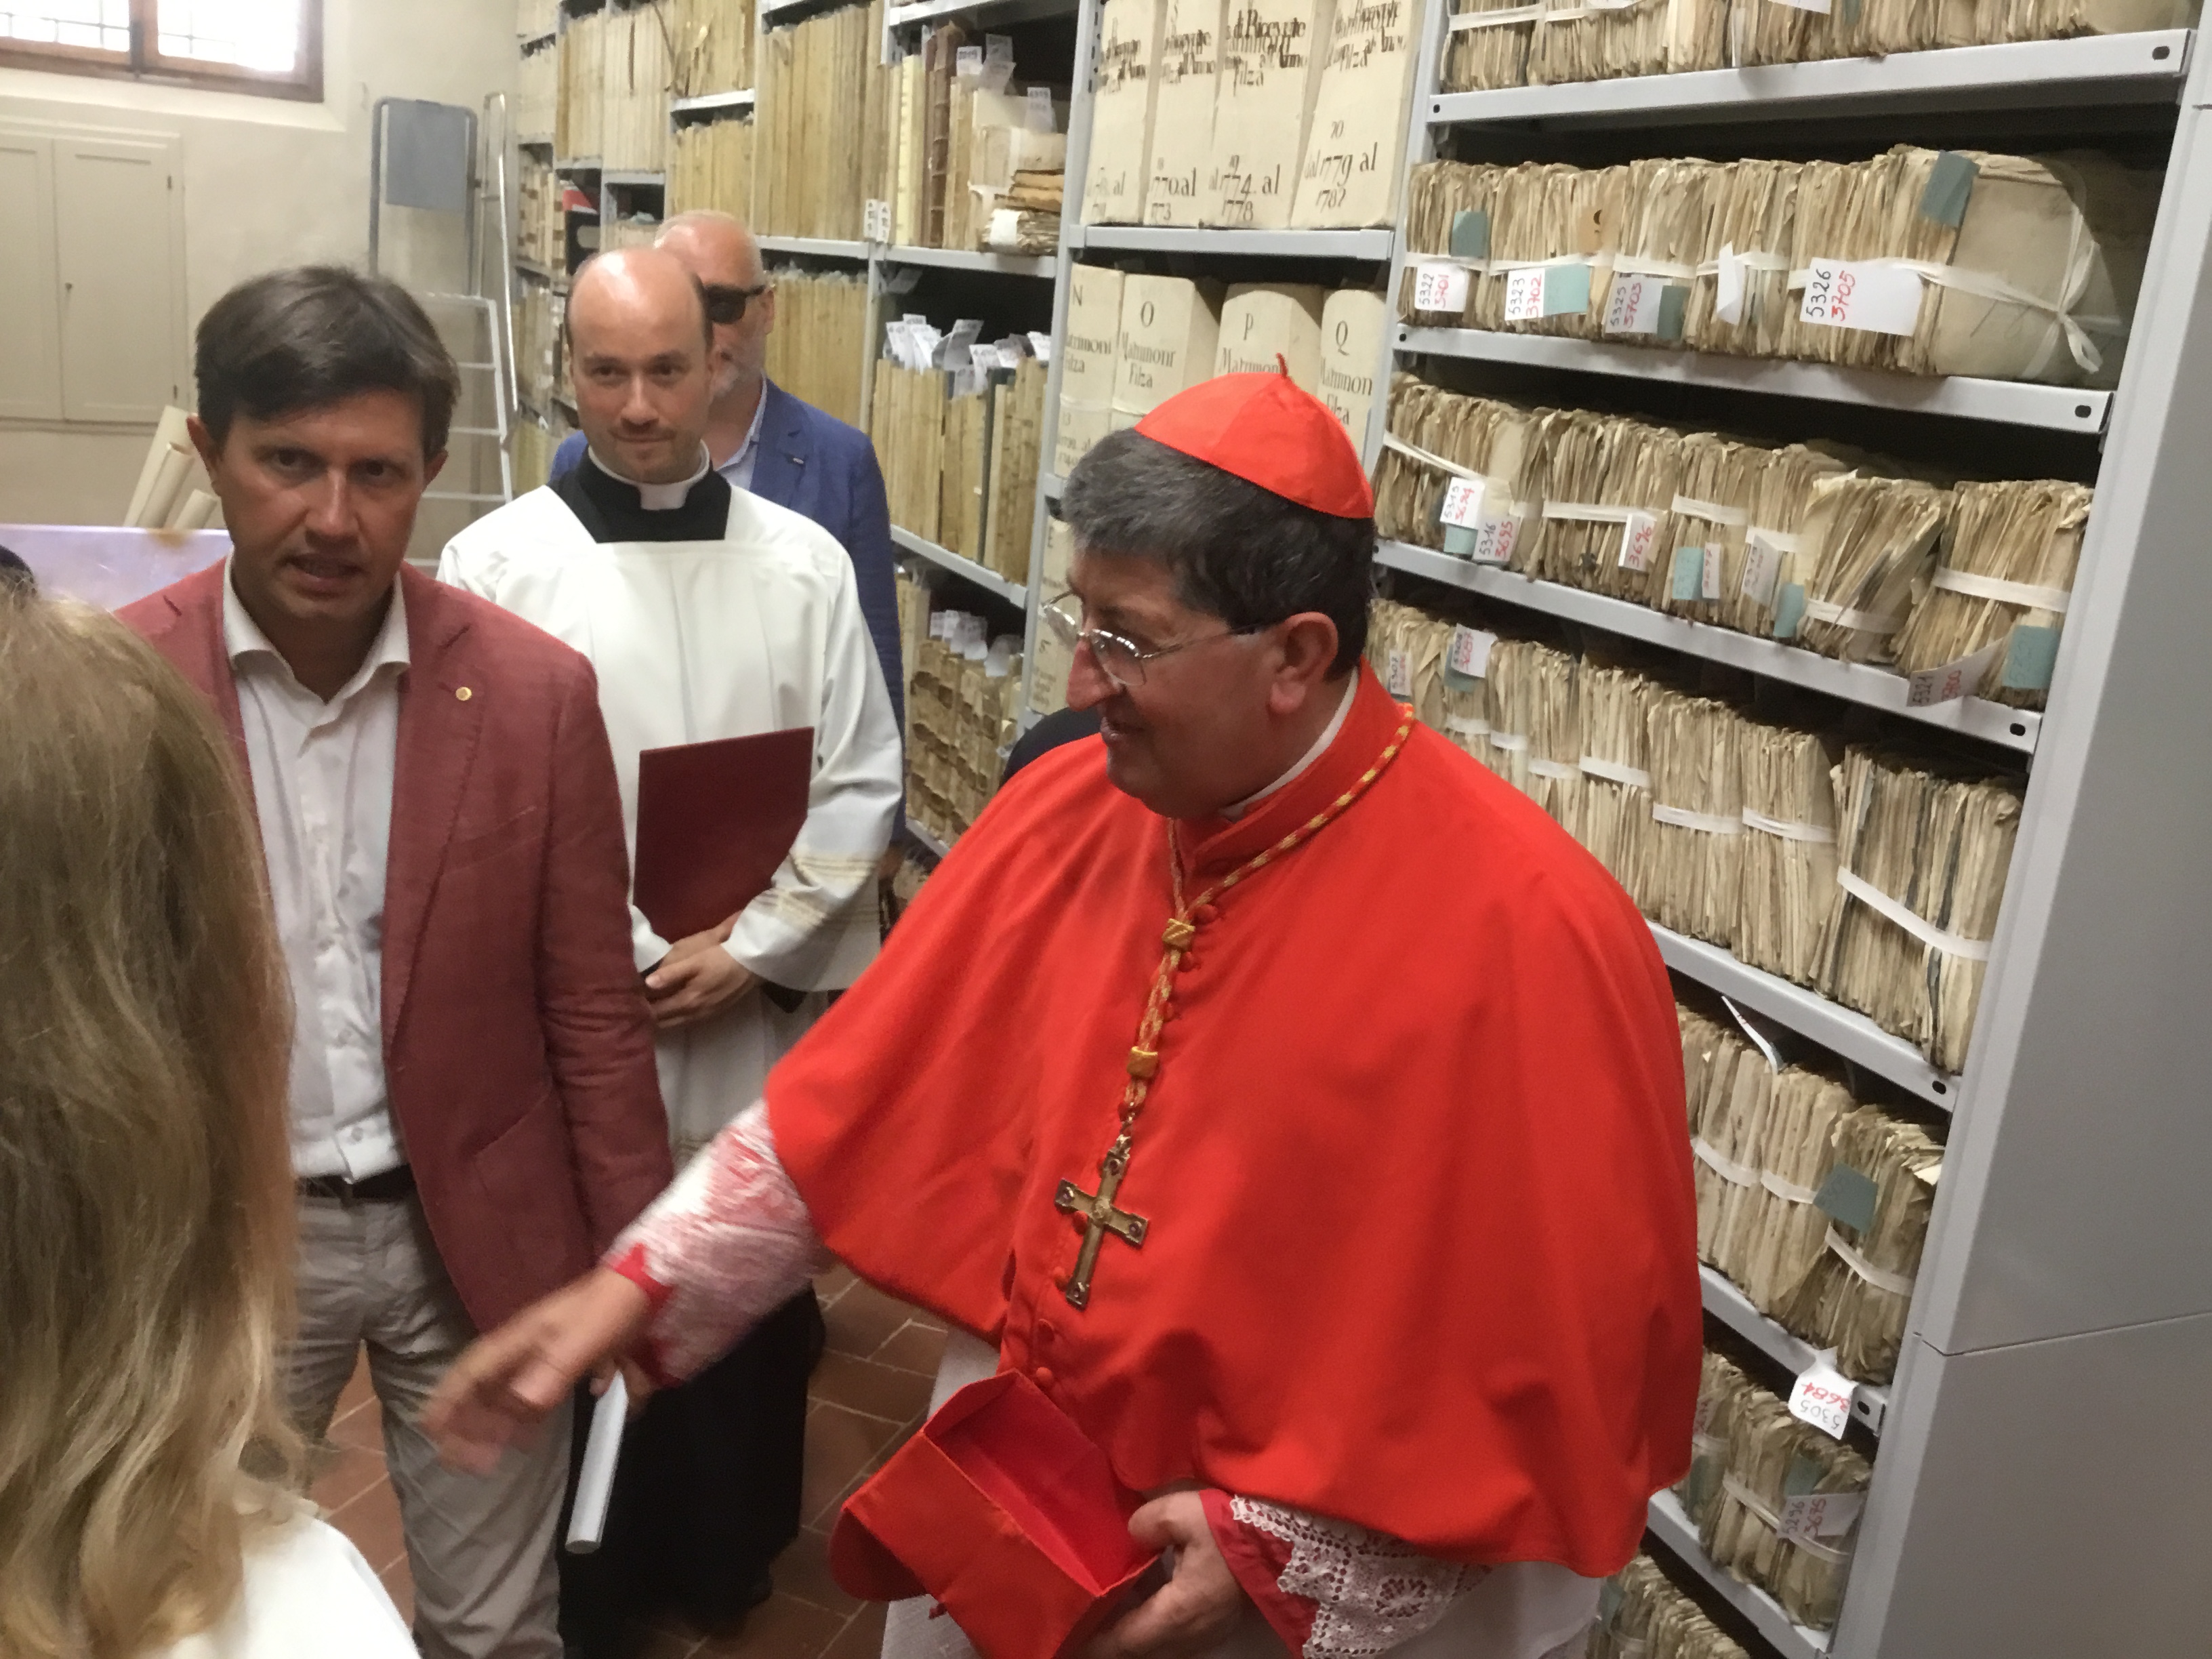 Cardinale Betori nuovo archivio San Lorenzo-Foto Giornalista Franco Mariani (10)